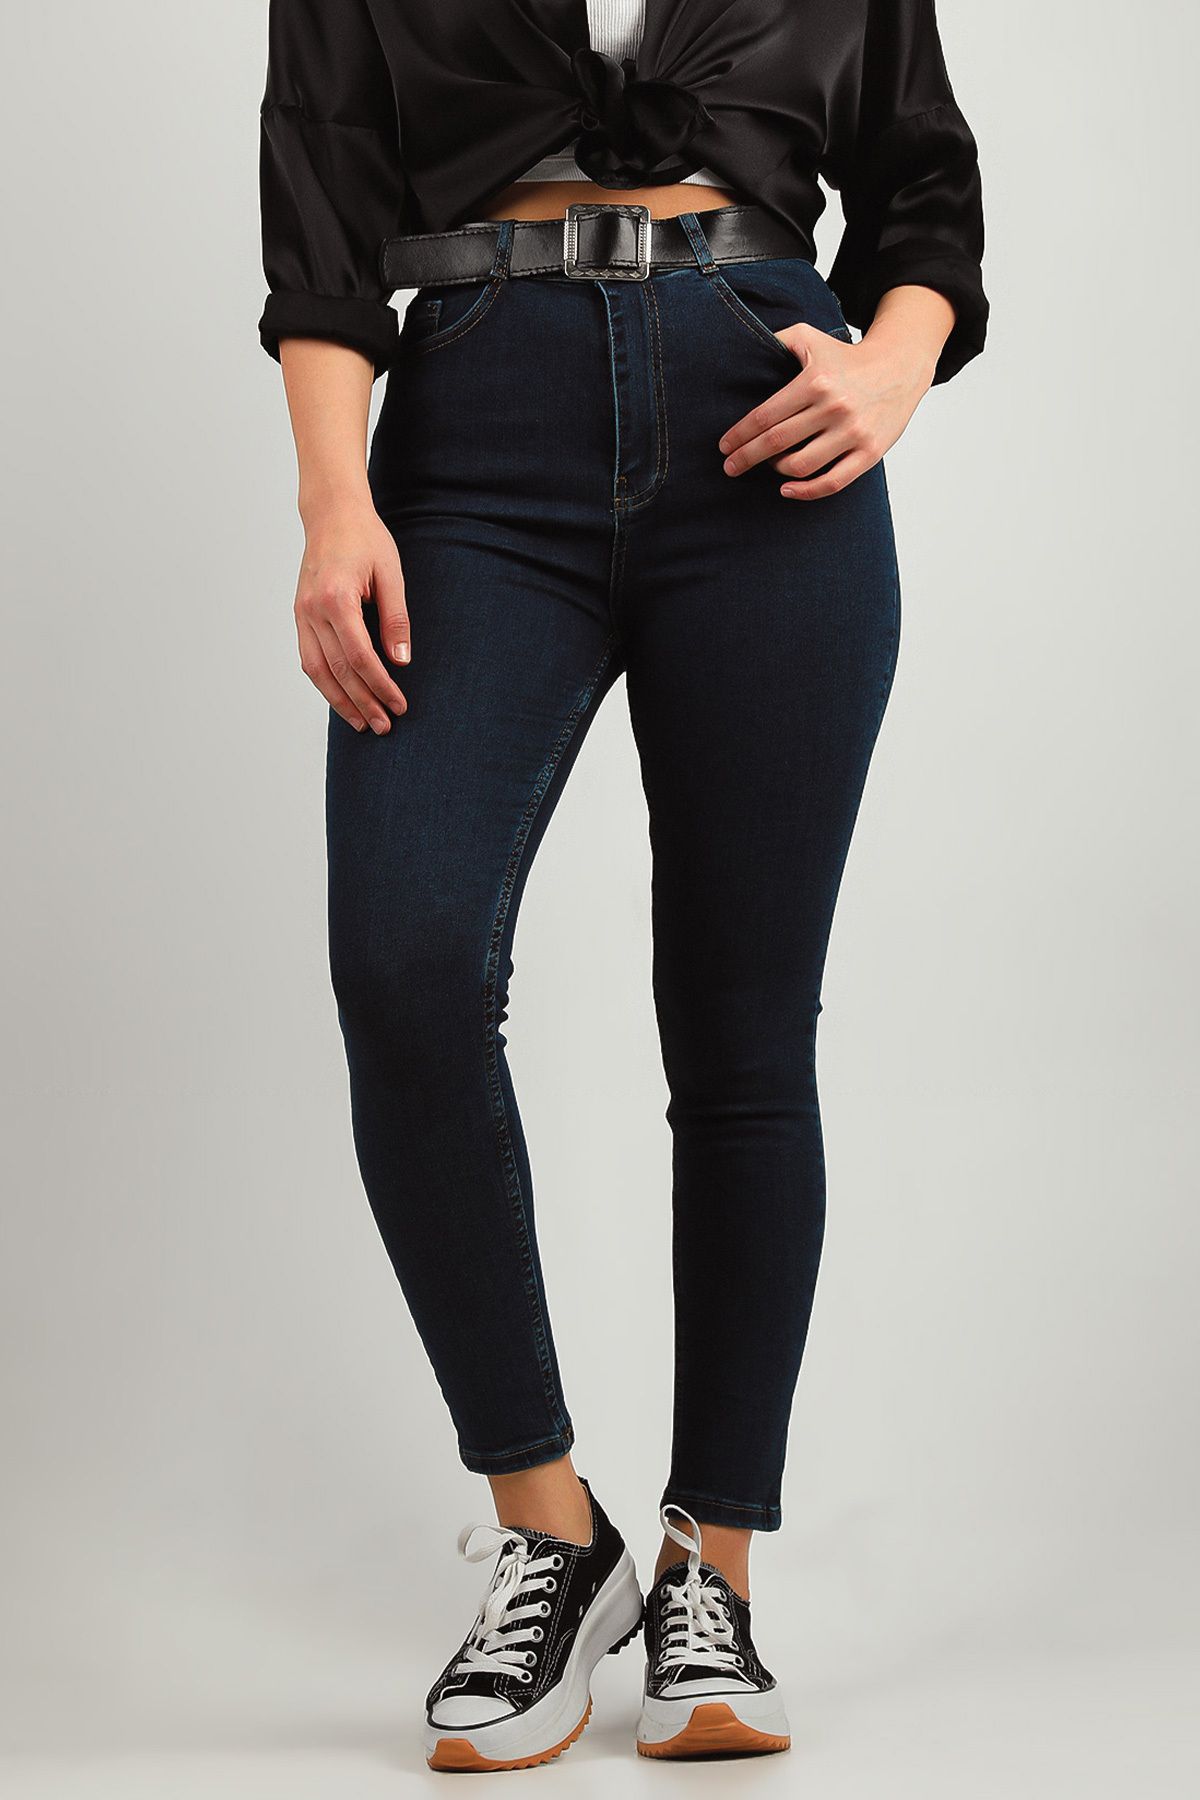 Julude Lacivert Kadın Yüksek Bel Jeans Pantolon